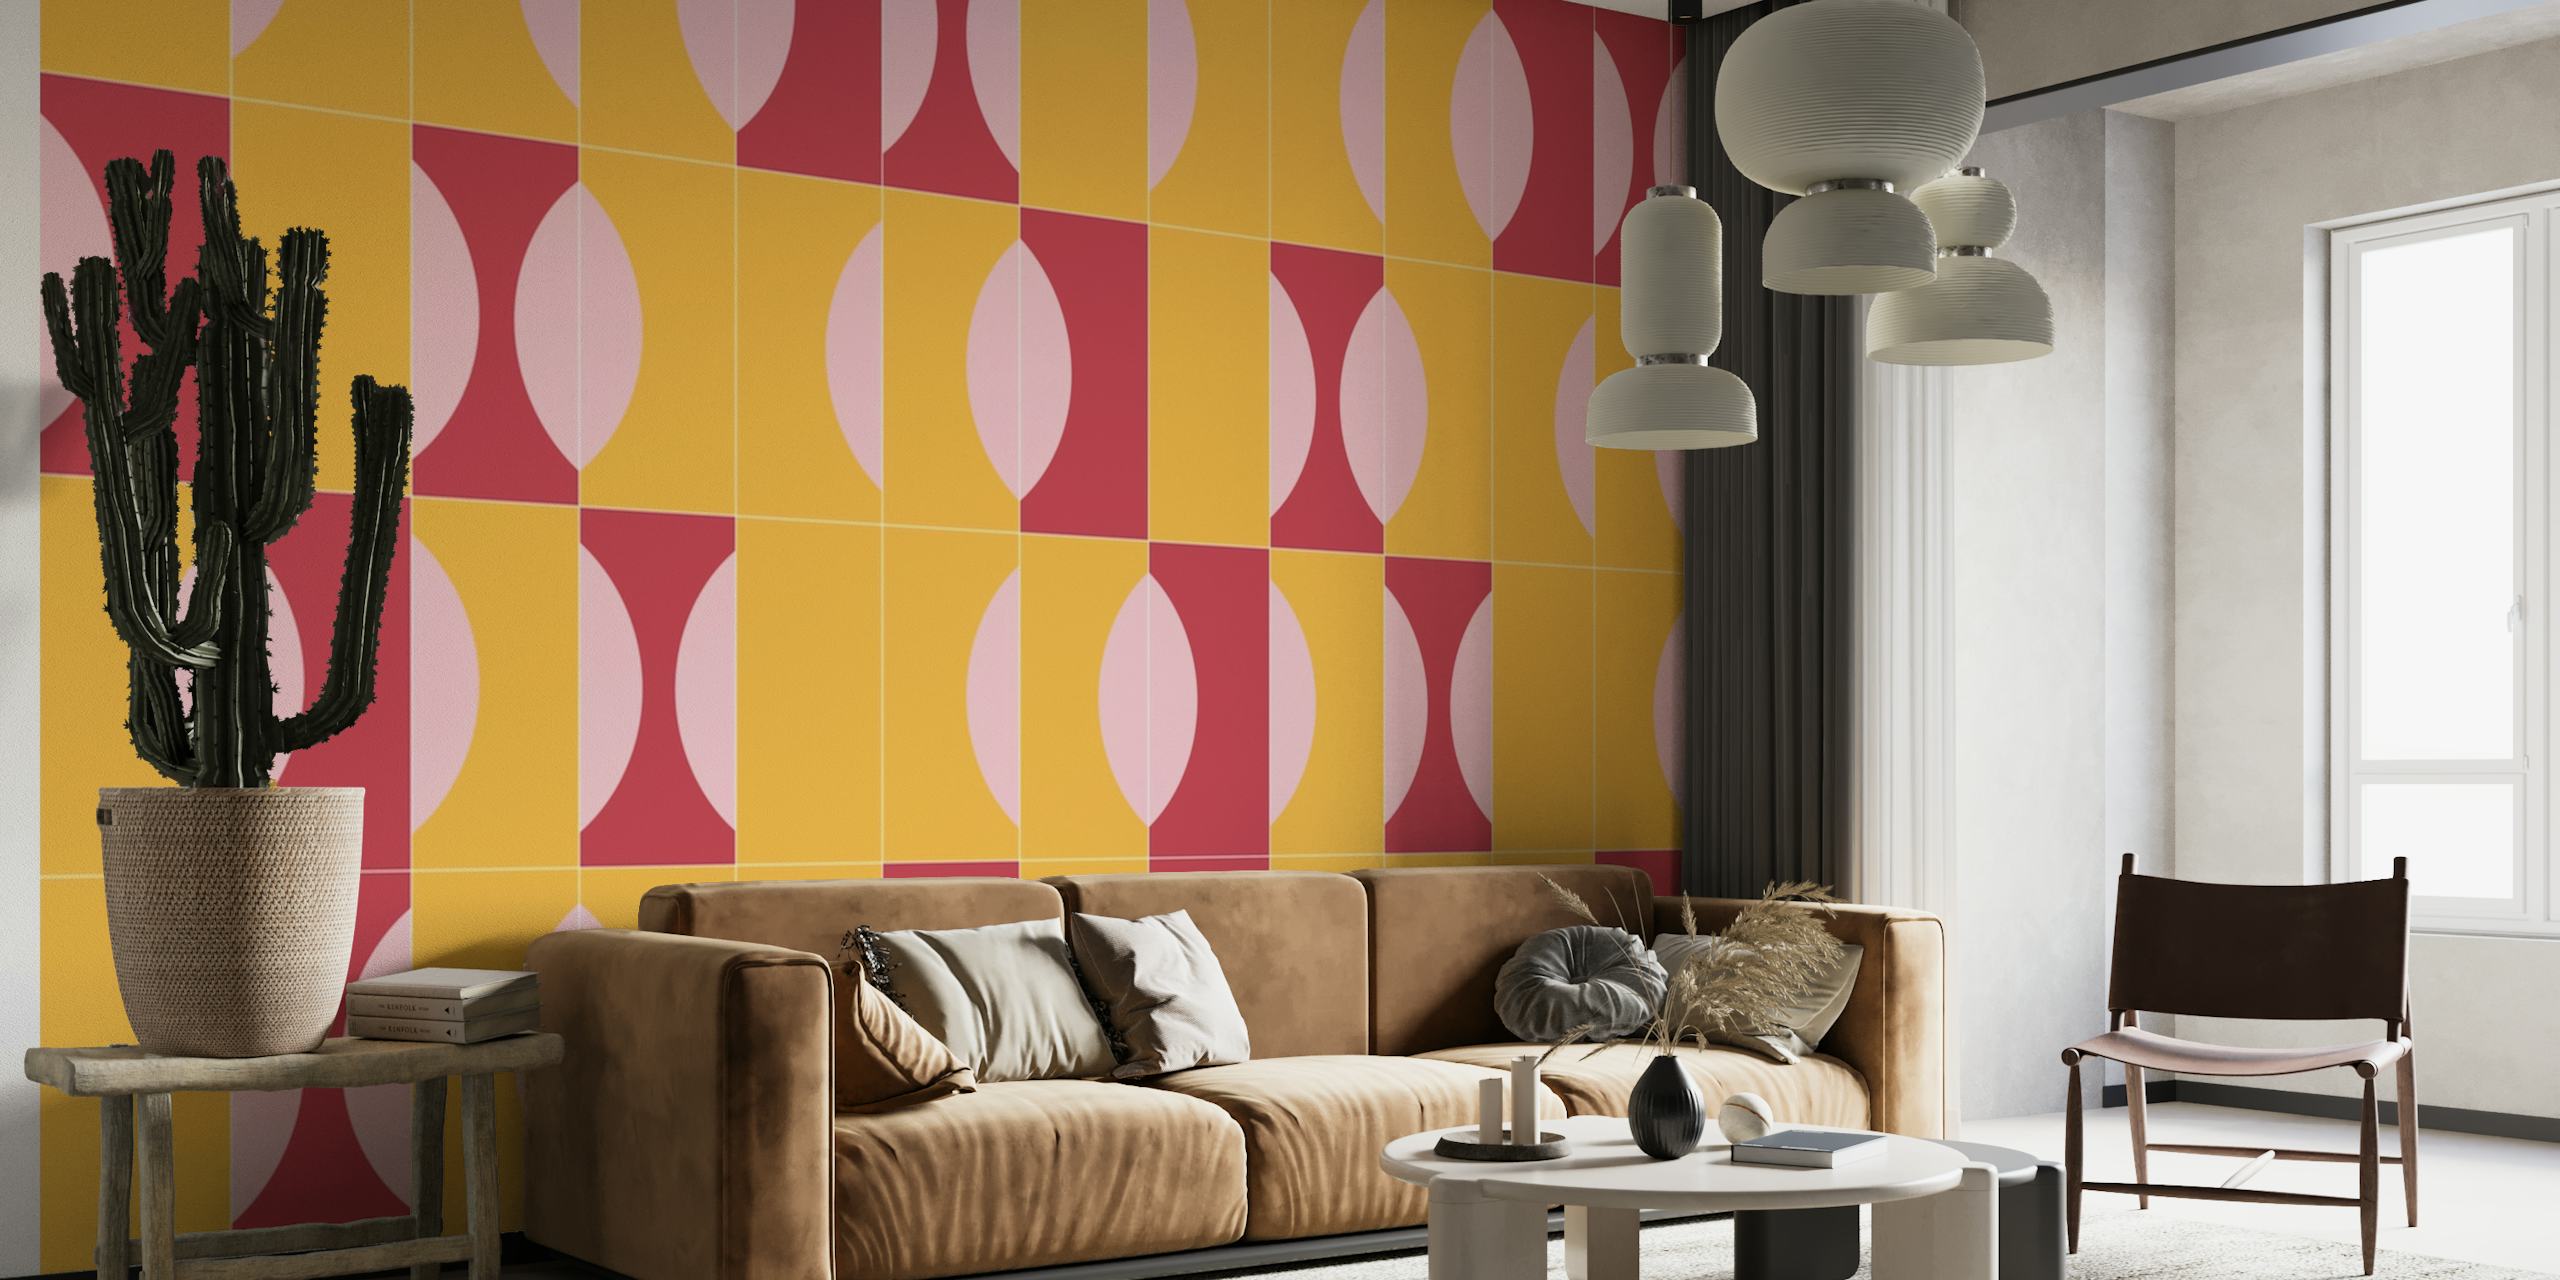 Abstract Sunny Tiles 03 fotobehang met geometrische vormen in oranje, roze en lavendeltinten